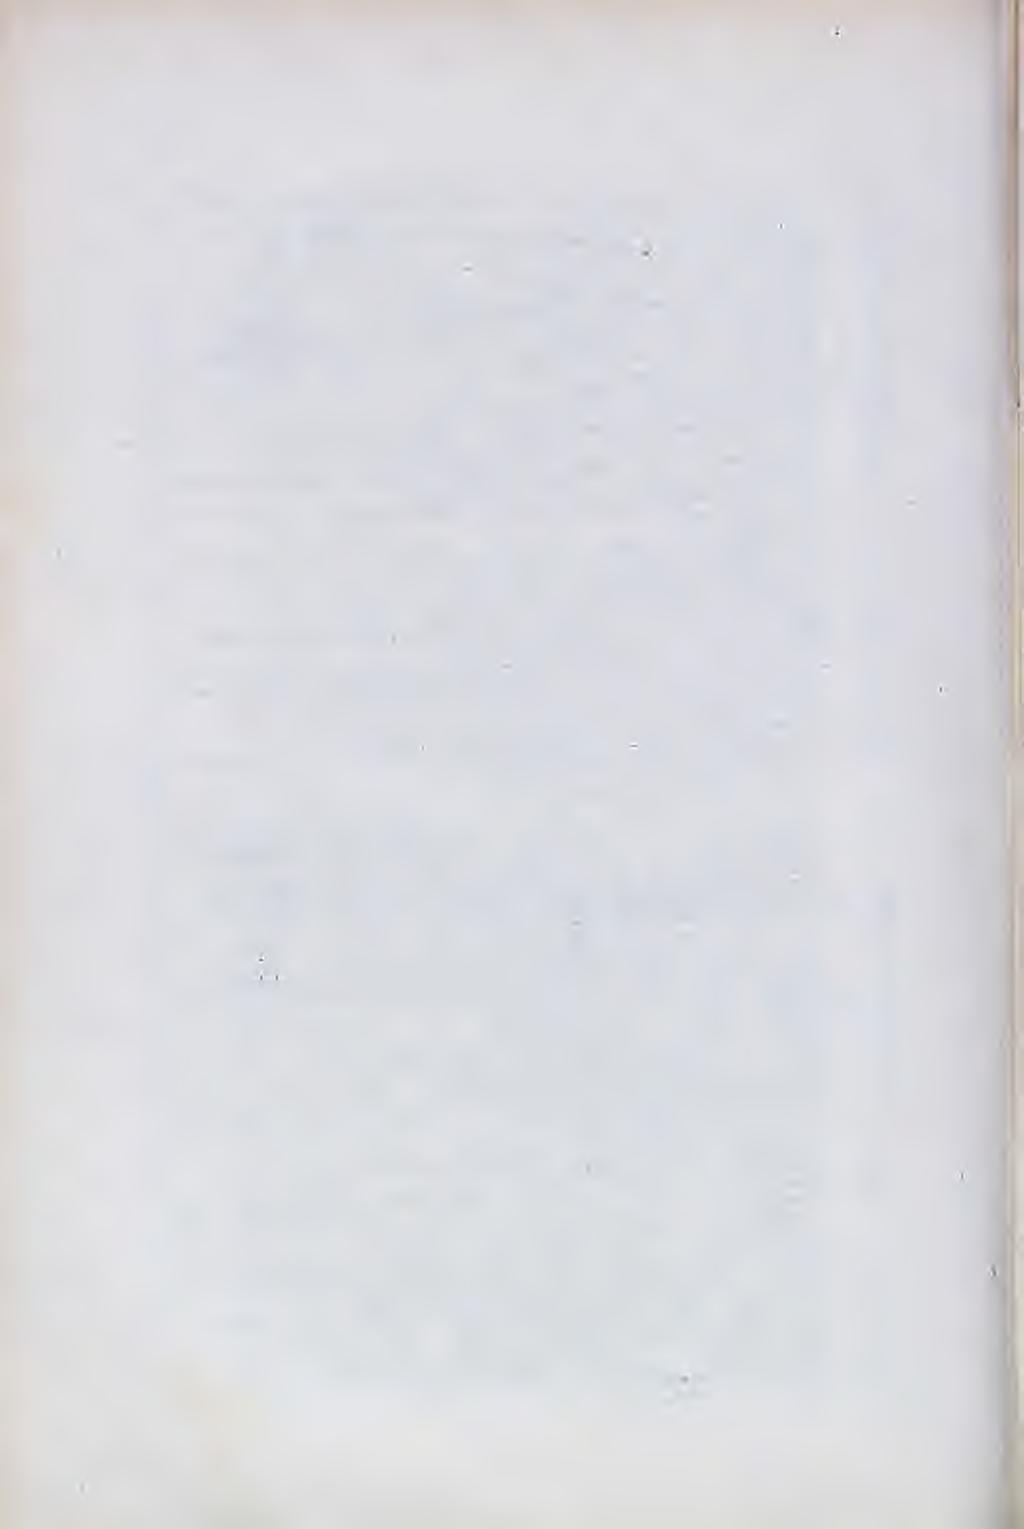 X 416. Dr. Pejiić Vilim, kr. žup. fizik u m., Bjelovar, 1887. 417. Peričić Božo, primarni liječnik i ravnatelj pokr. zetn. bolnice, Split (Dalmacija), 1890. 418. Peričić Mihovil, kr.